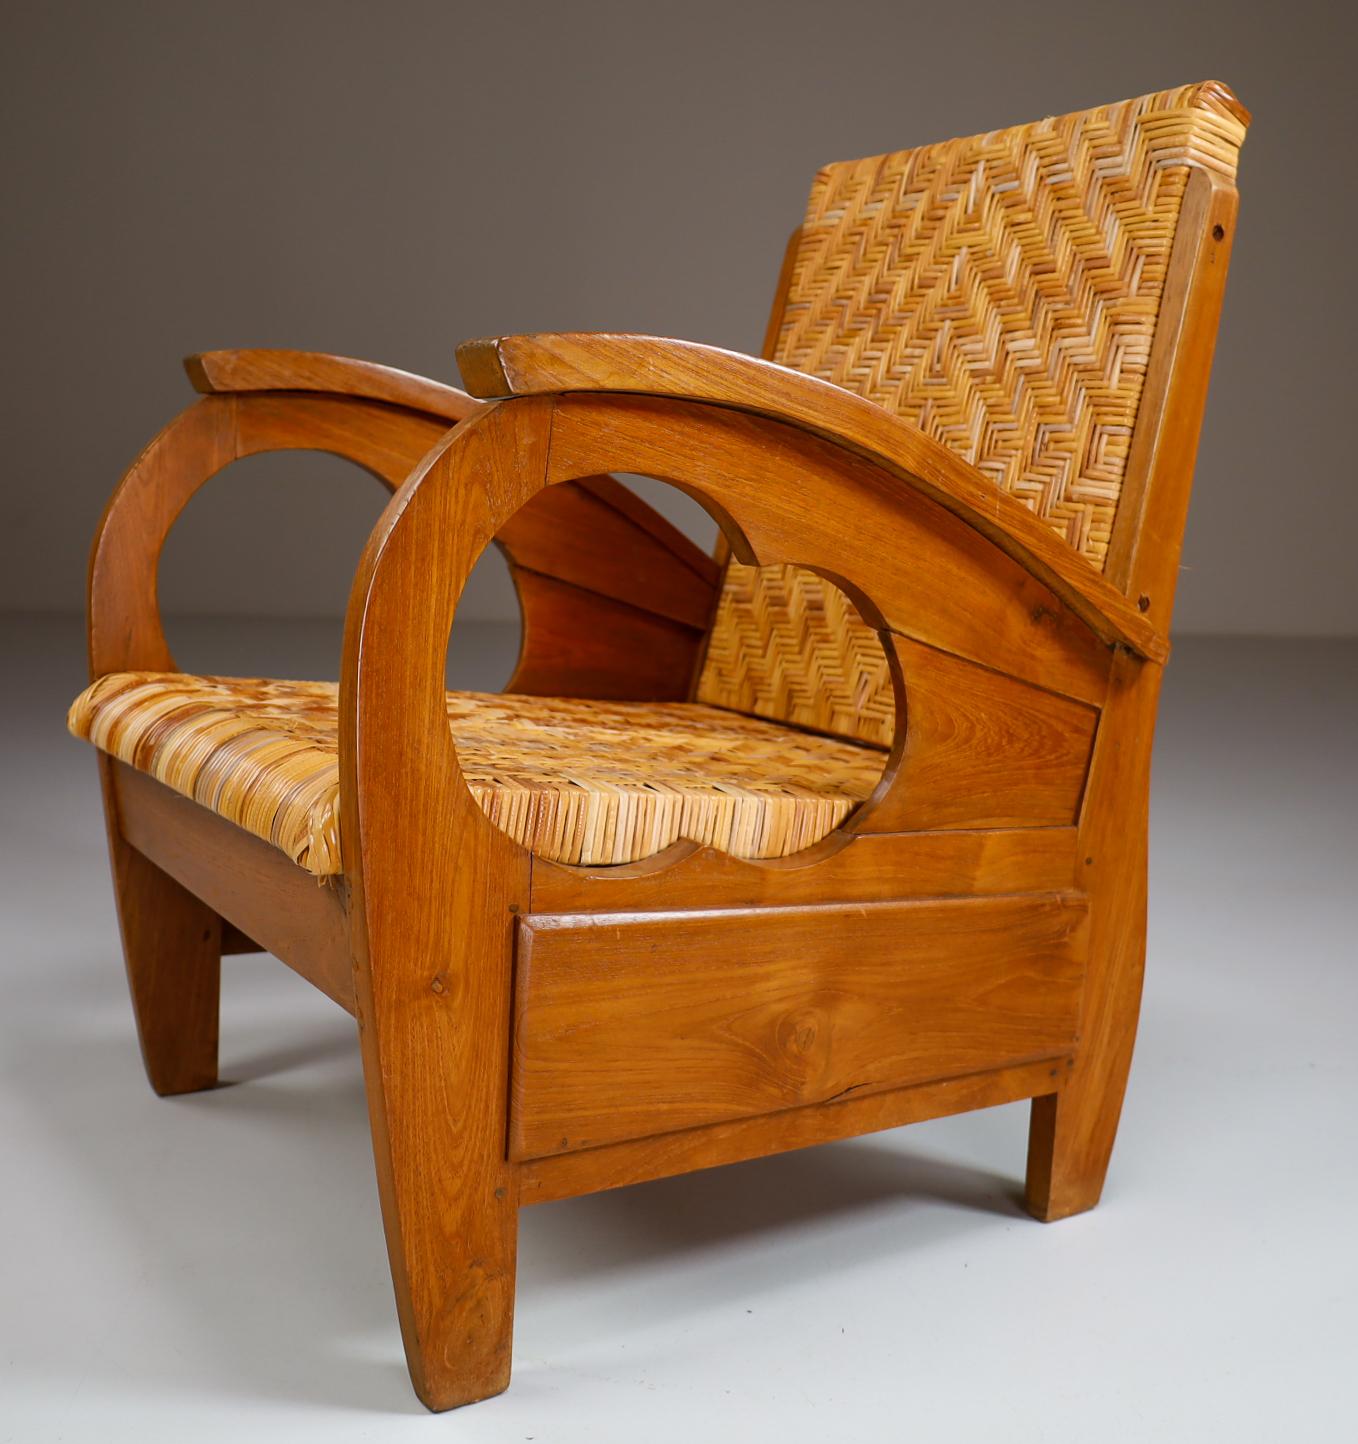 Ein einzigartiger britischer Kolonialstil Art Deco Sessel aus Hartholz mit Sitz aus Schilfrohr. Dieser britische Kolonialsessel im Art-Deco-Stil würde sich hervorragend in einem Art-Deco-, Mid-Century-Modern-, skandinavisch-modernen oder